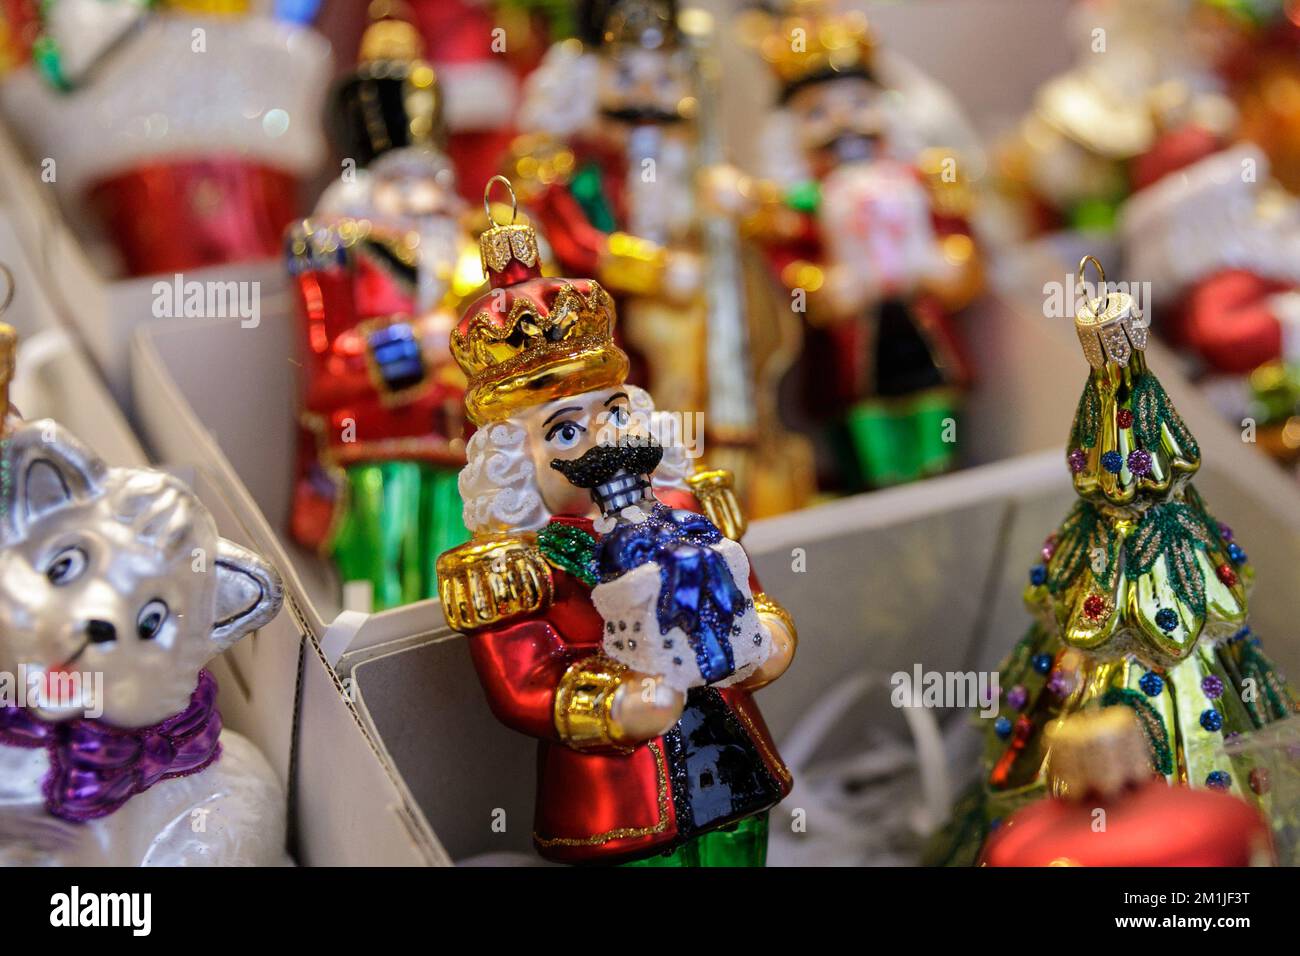 Les décorations d'arbres de Noël sont vues au stand de la foire pendant la  foire de Noël de Gdansk. Selon le classement des meilleurs marchés de Noël  en Europe sur le site